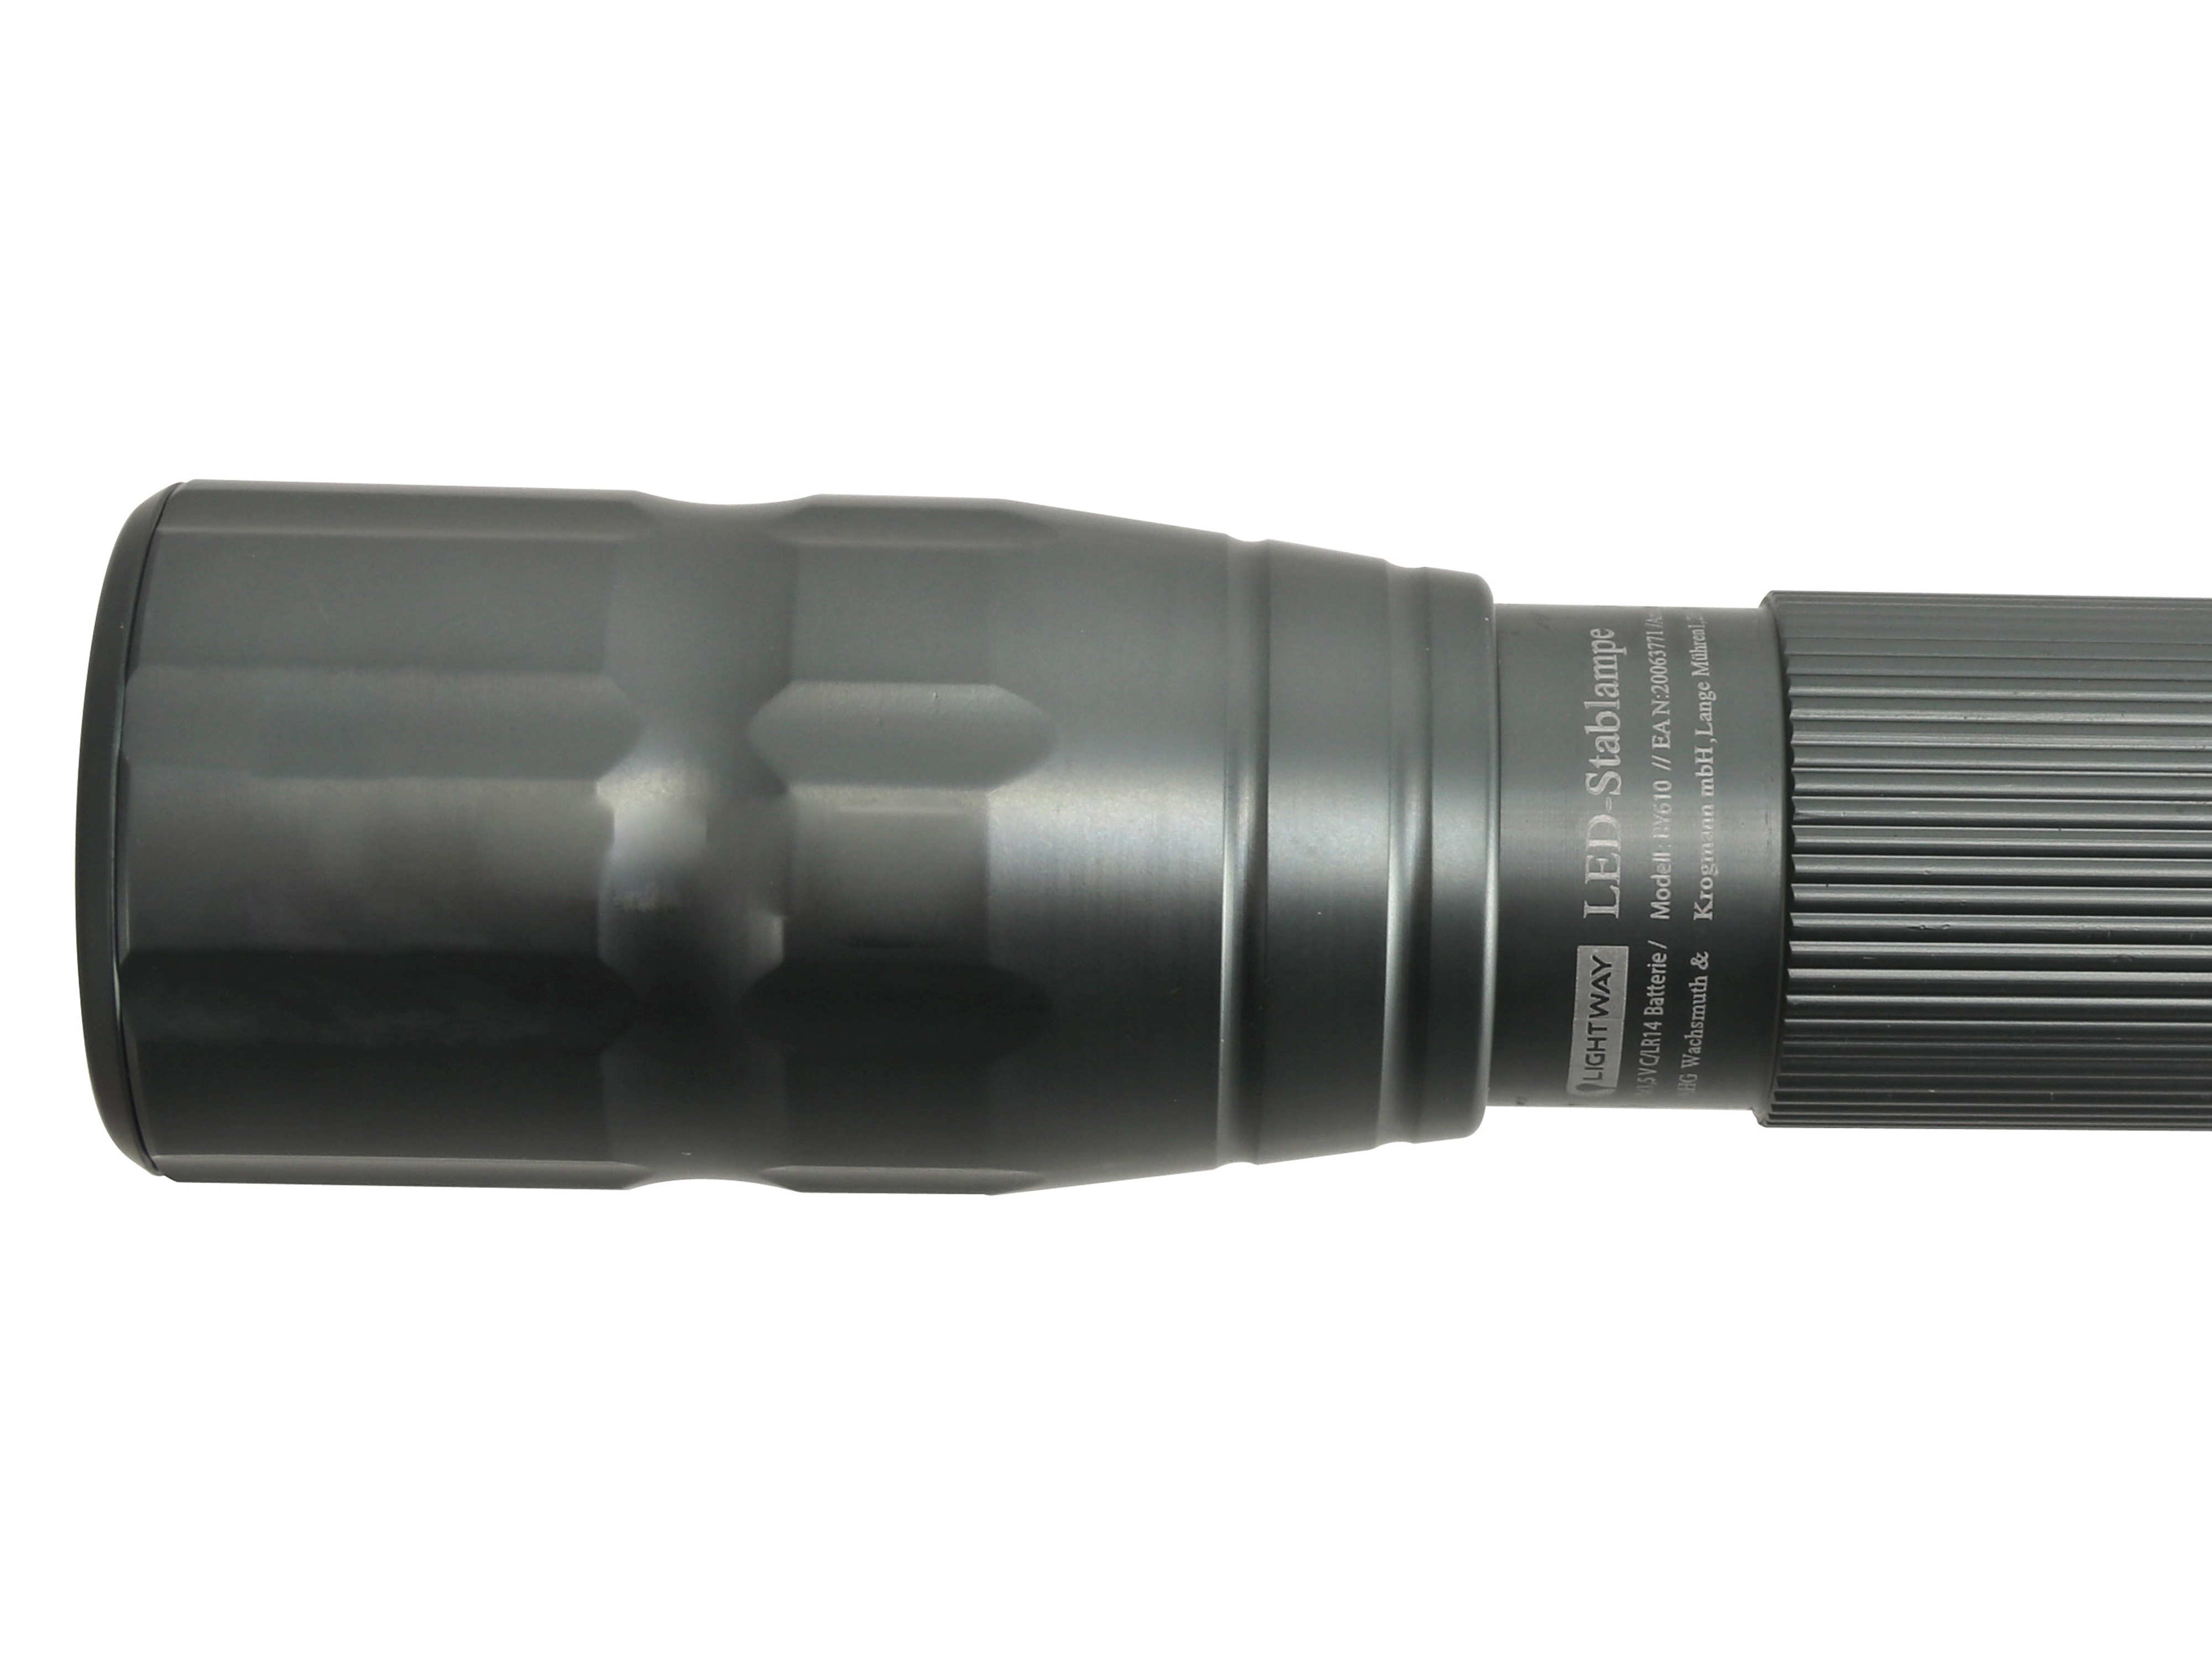 AZAA LED-Stablampe, RY610, 1200 lm, grau